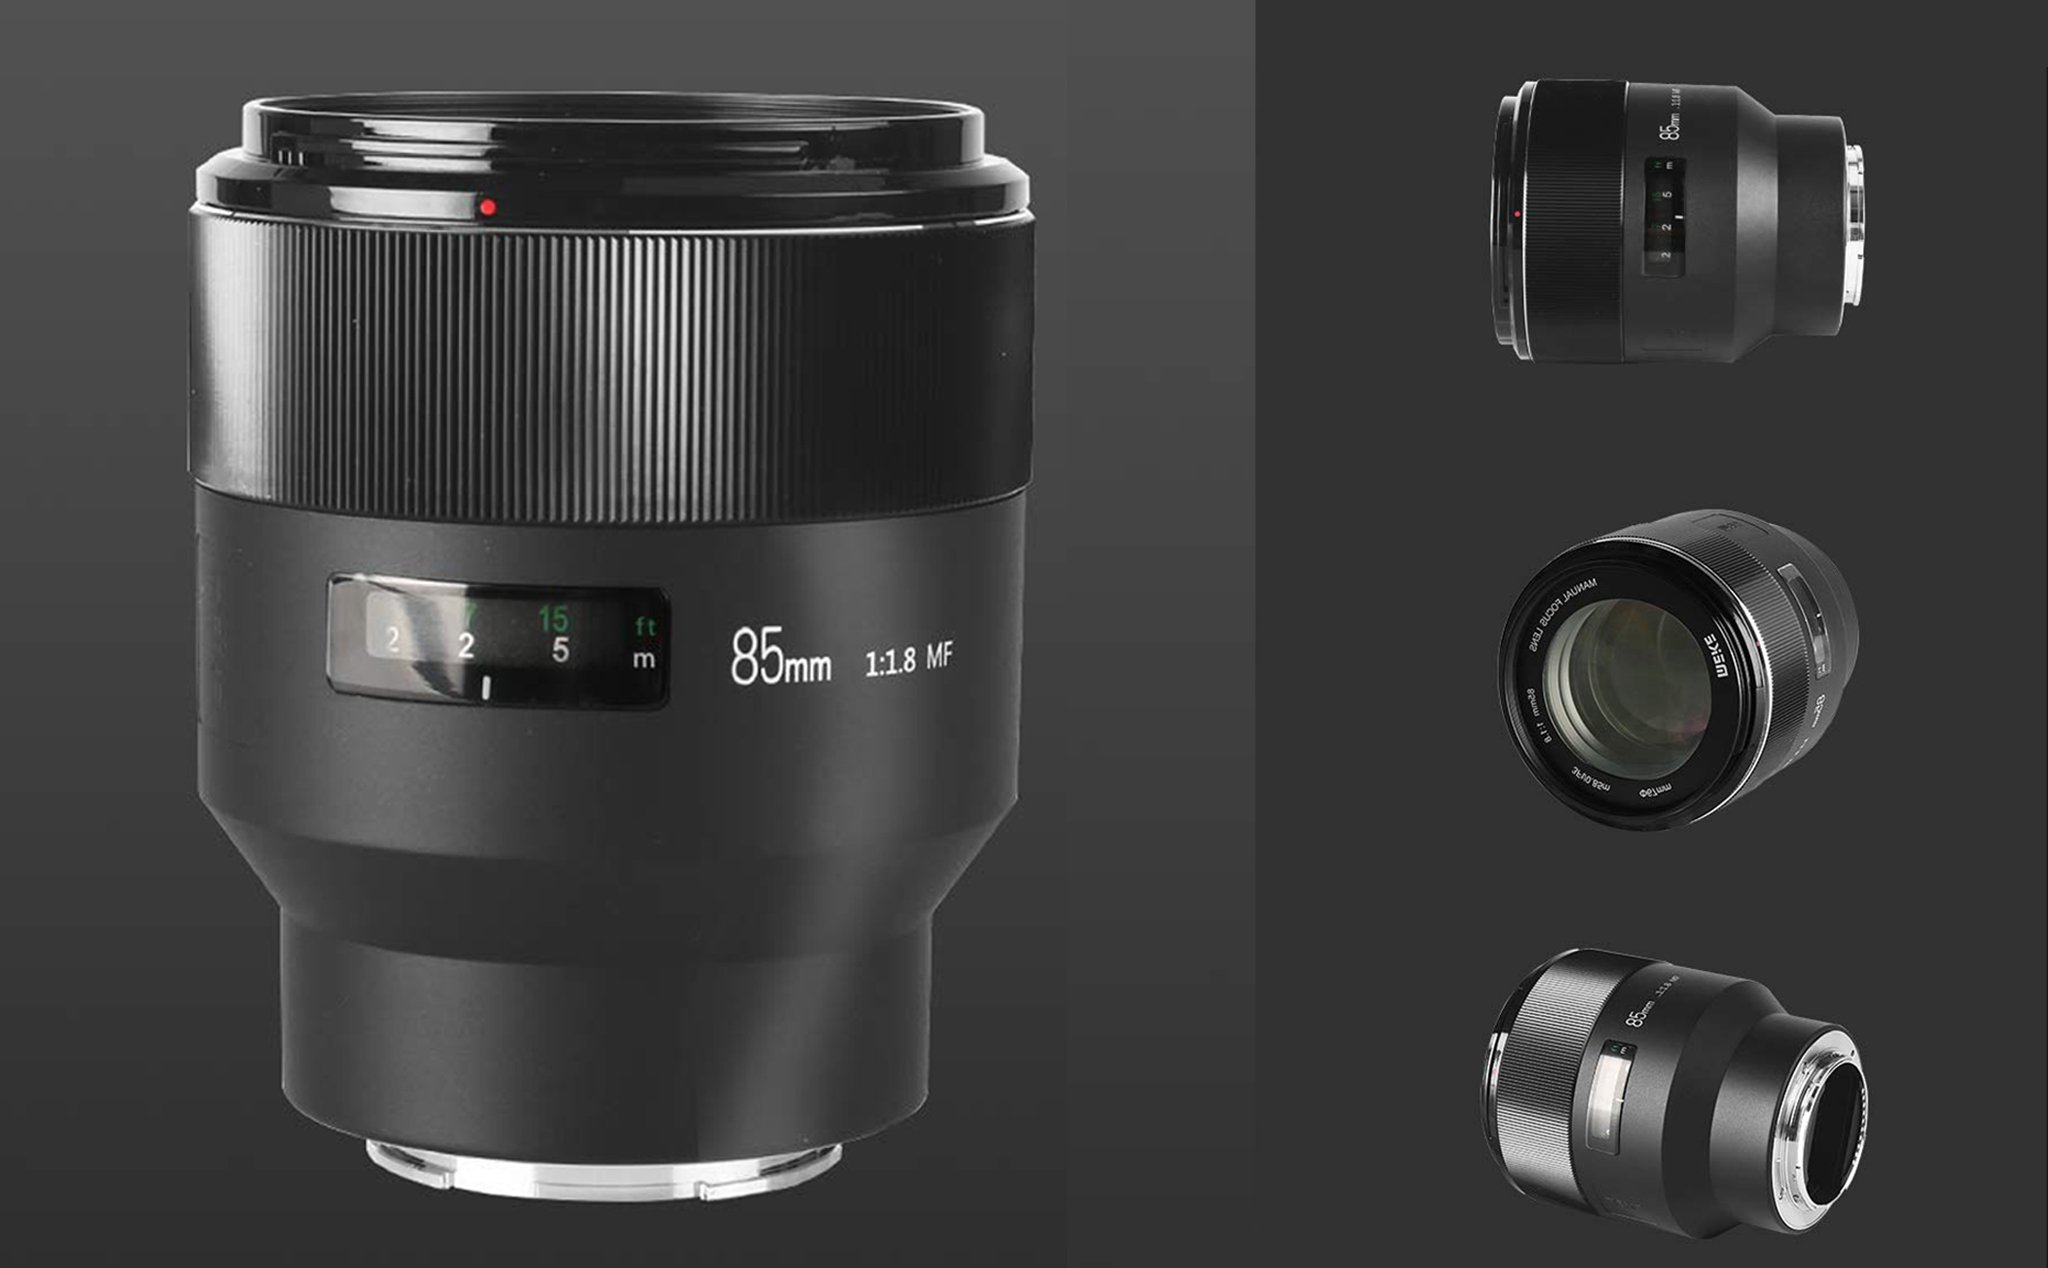 Meike ra mắt ống kính MK 85mm f/1.8 cho máy ảnh mirrorless full-frame Sony E